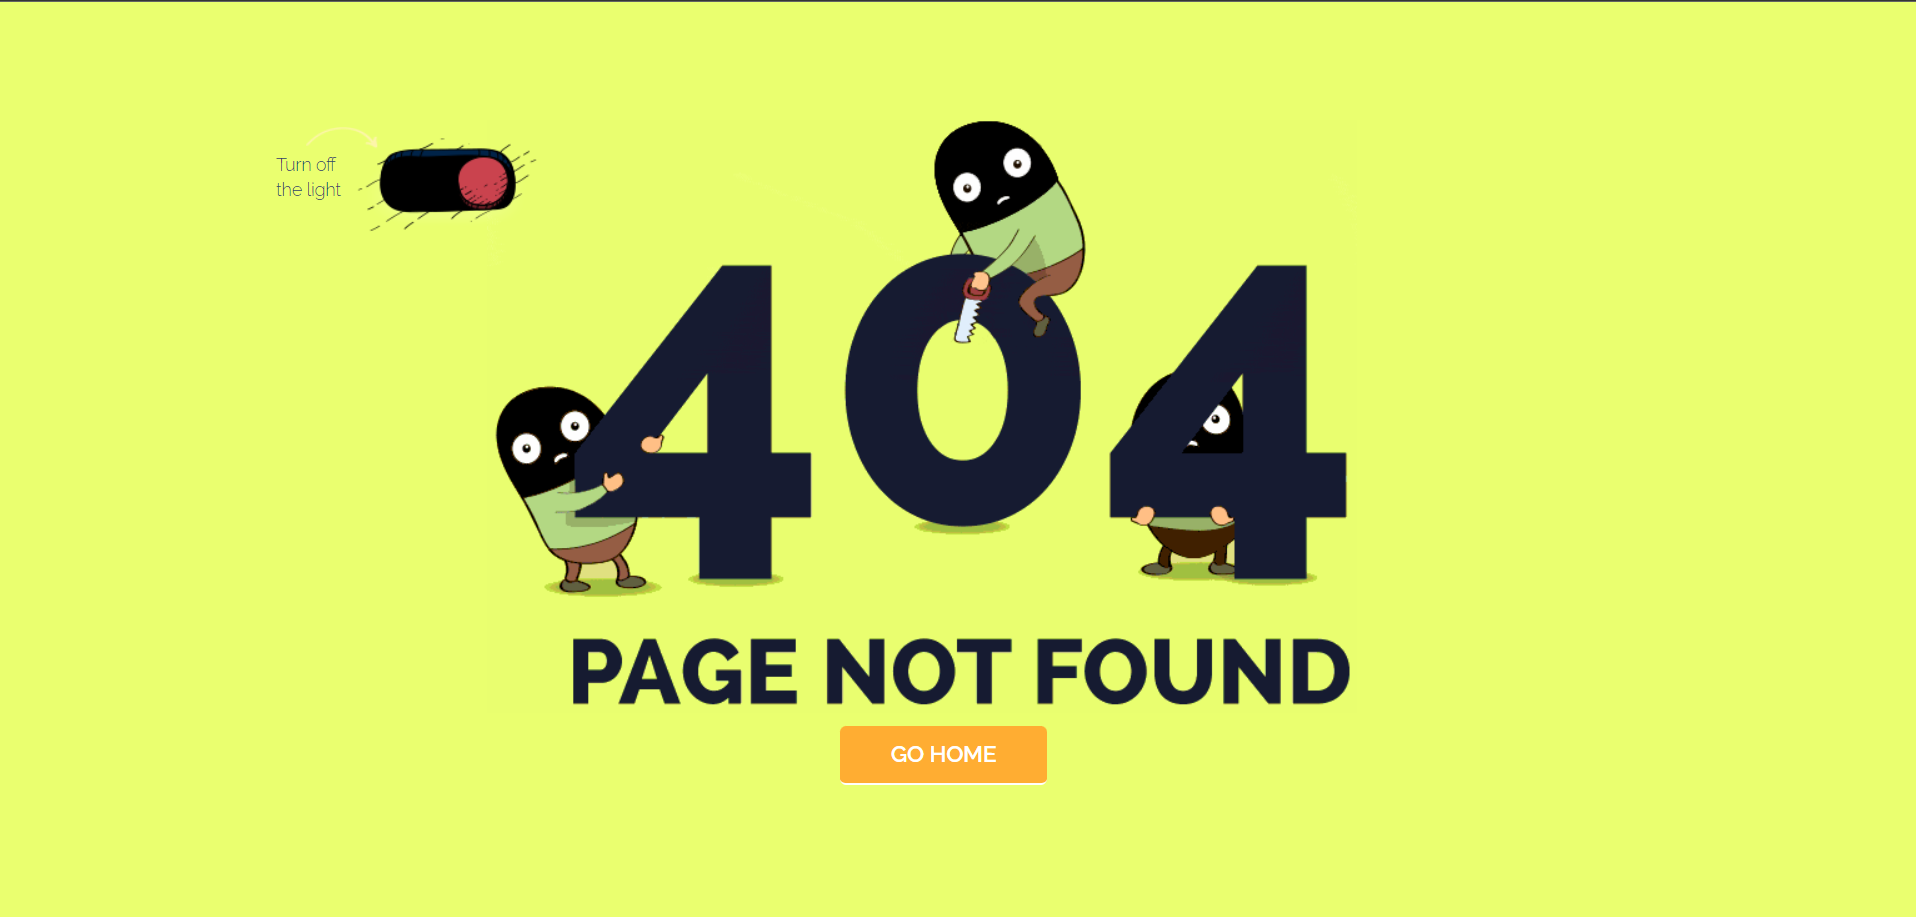 炫酷404错误页面